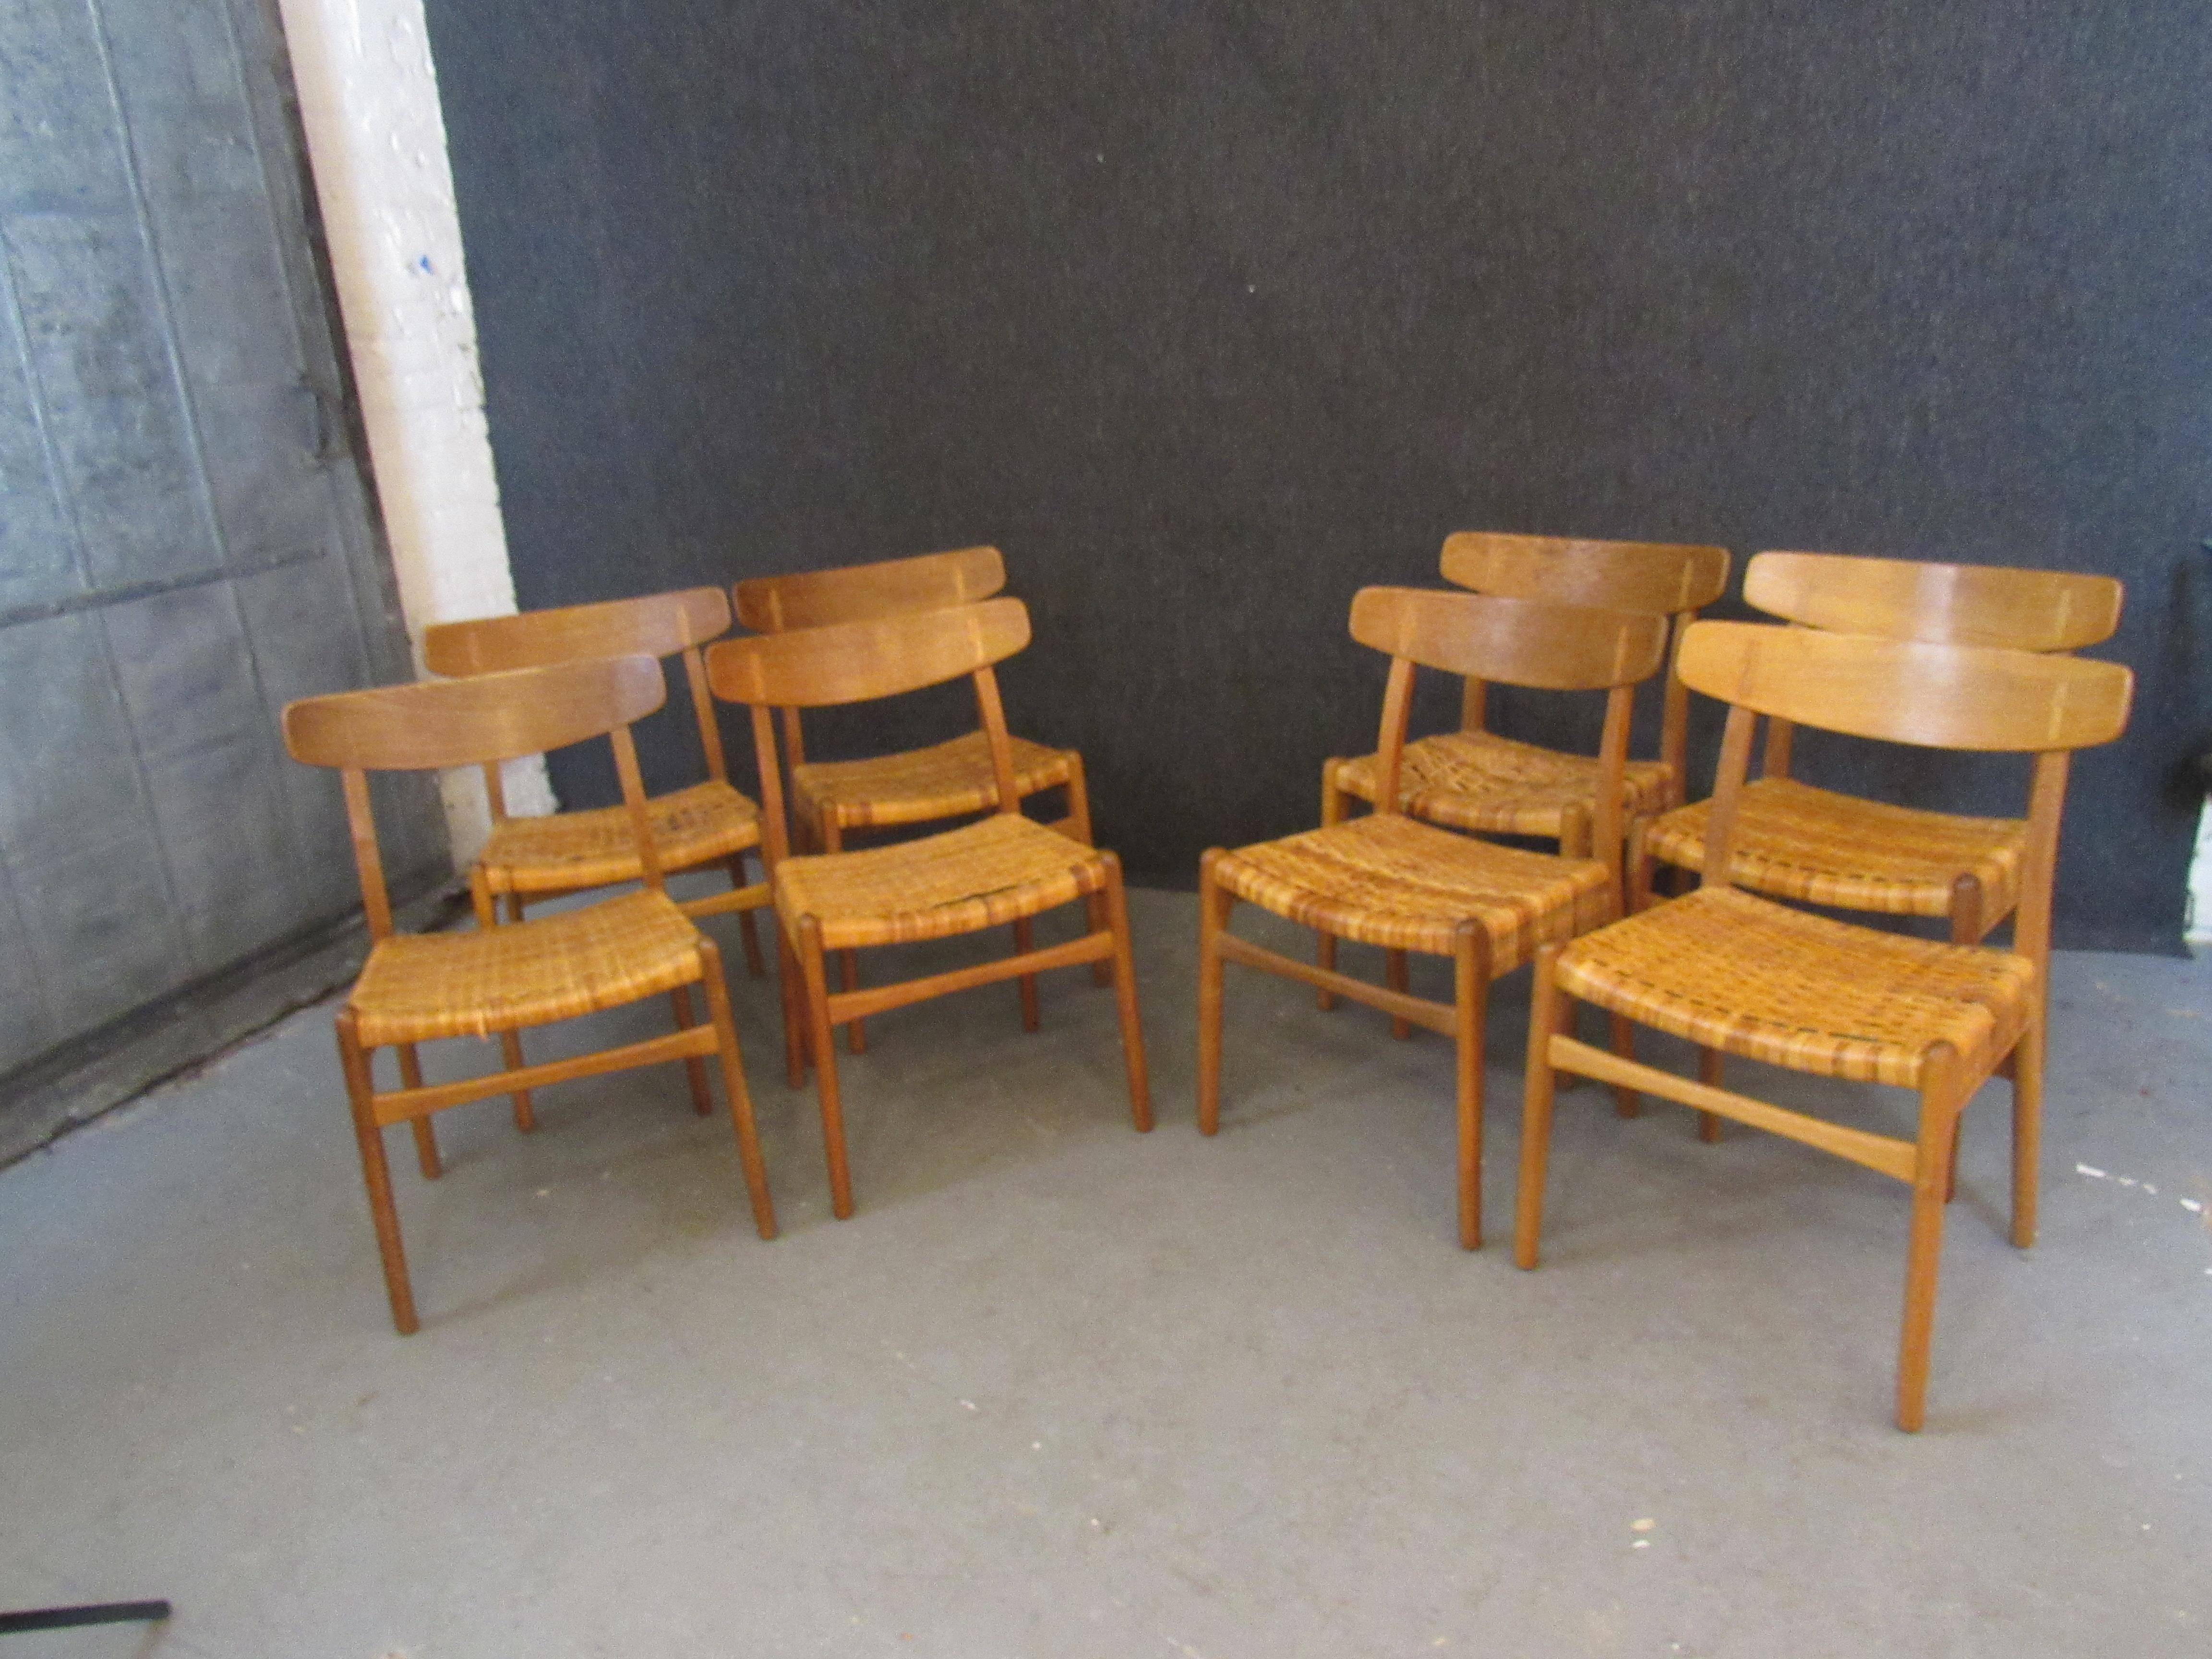 Faites entrer chez vous l'authentique mobilier danois moderne du milieu du siècle qui a fait l'envie du monde du design avec cet ensemble exquis de chaises de salle à manger originales Hans Wegner CH-23 en chêne et en rotin. Le grain du bois de